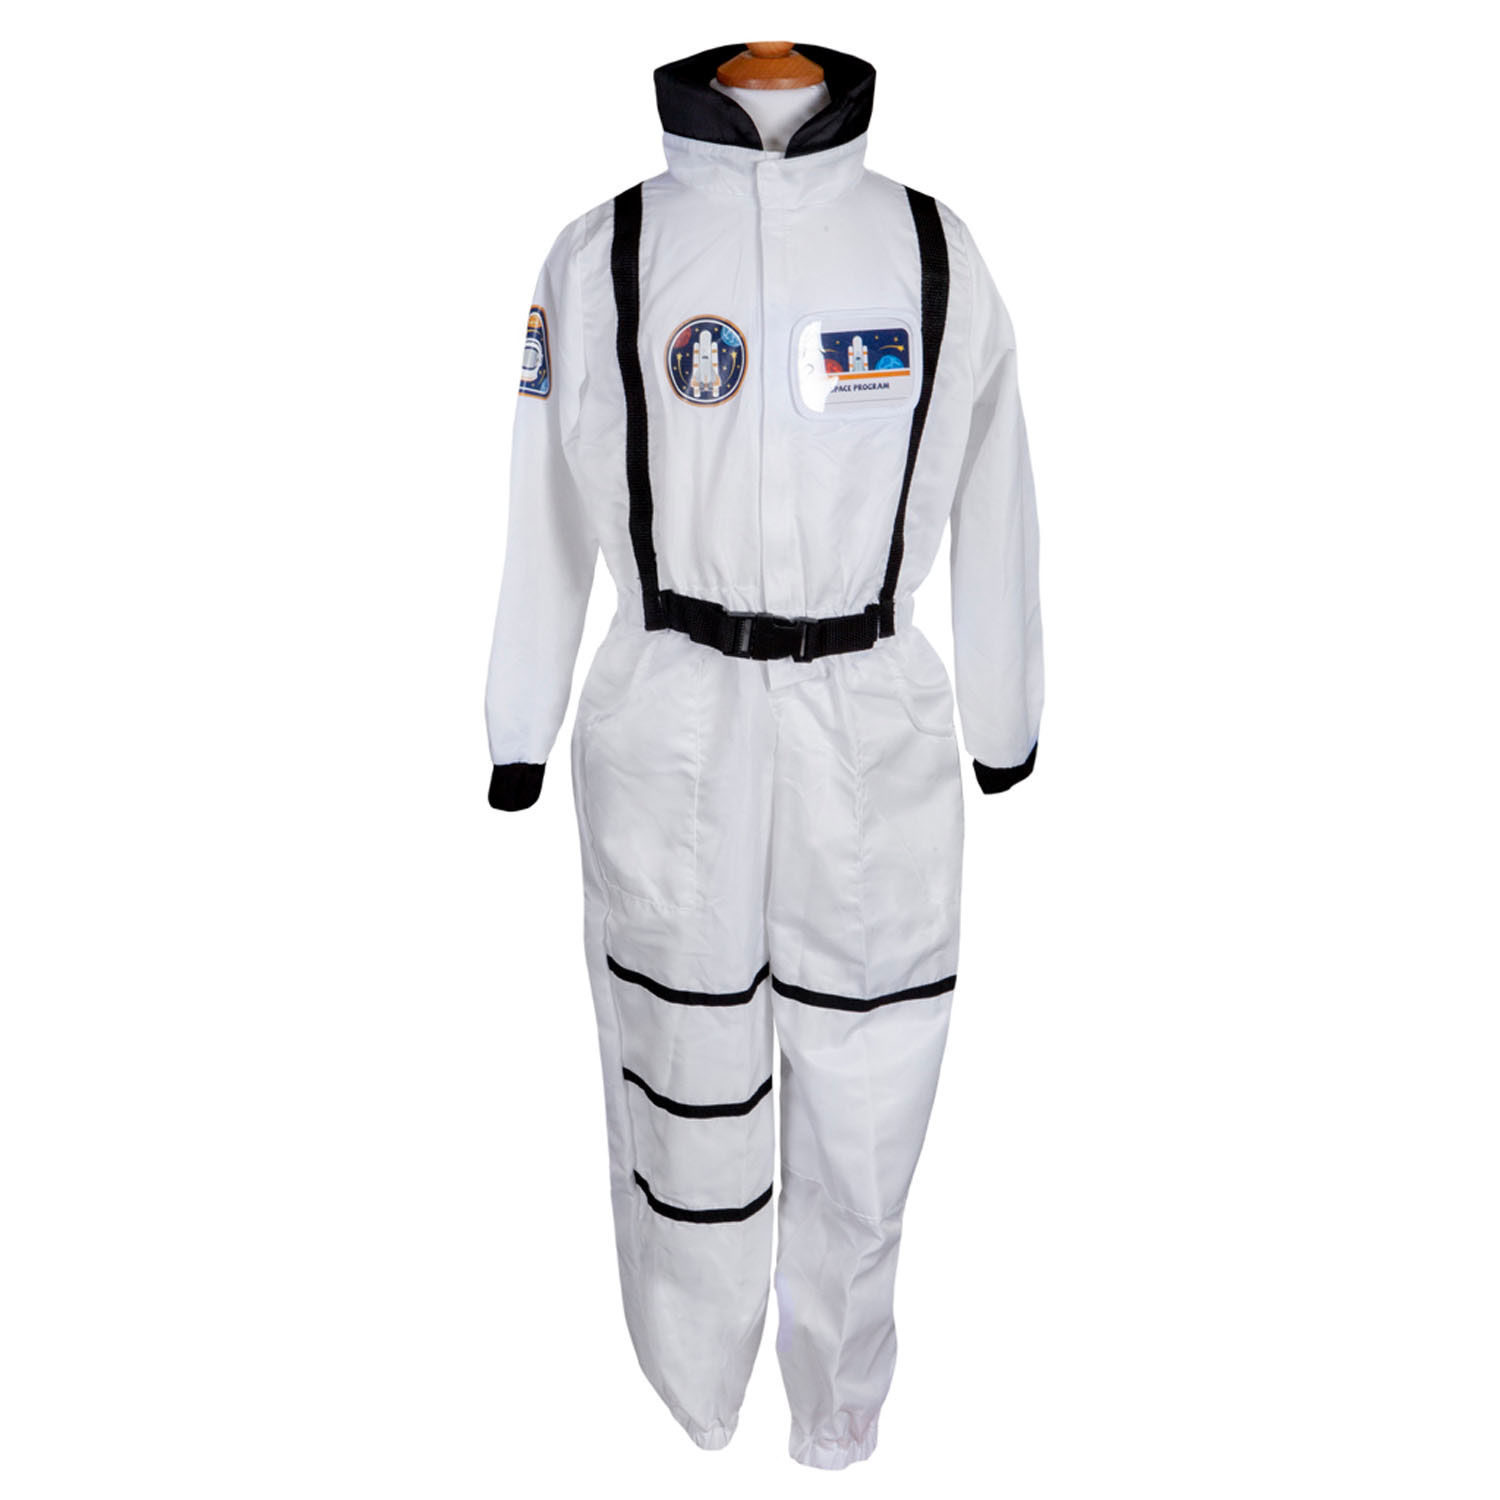 Verkleedset Astronaut, 5-6 jaar